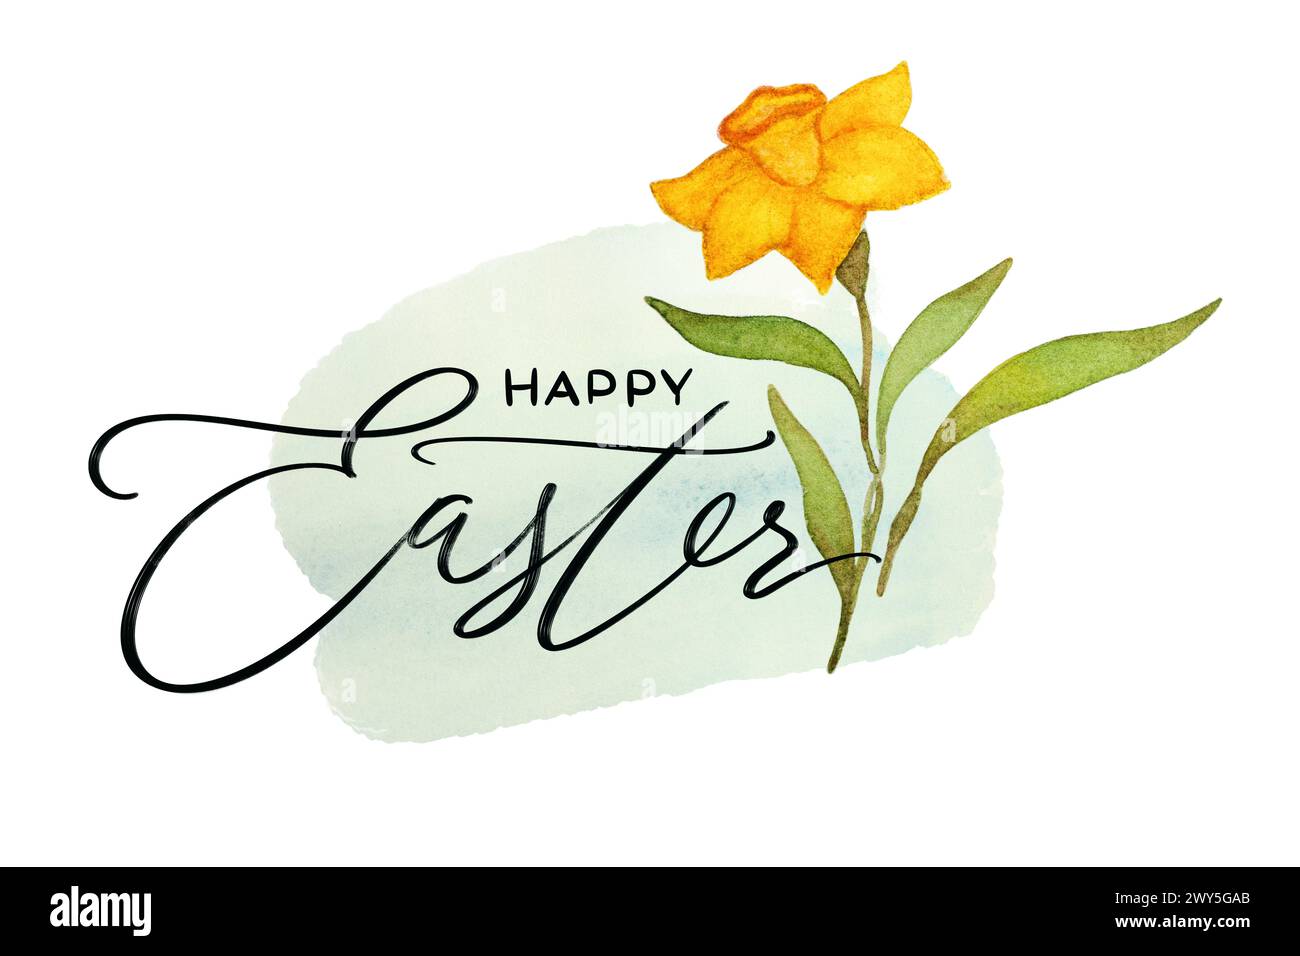 Illustrazione dei fiori dell'acquerello di Narcissus. Composizione floreale con scritta "Happy Easter". Illustrazione del fiore della molla. Composizione acquerello disegnato a mano Foto Stock